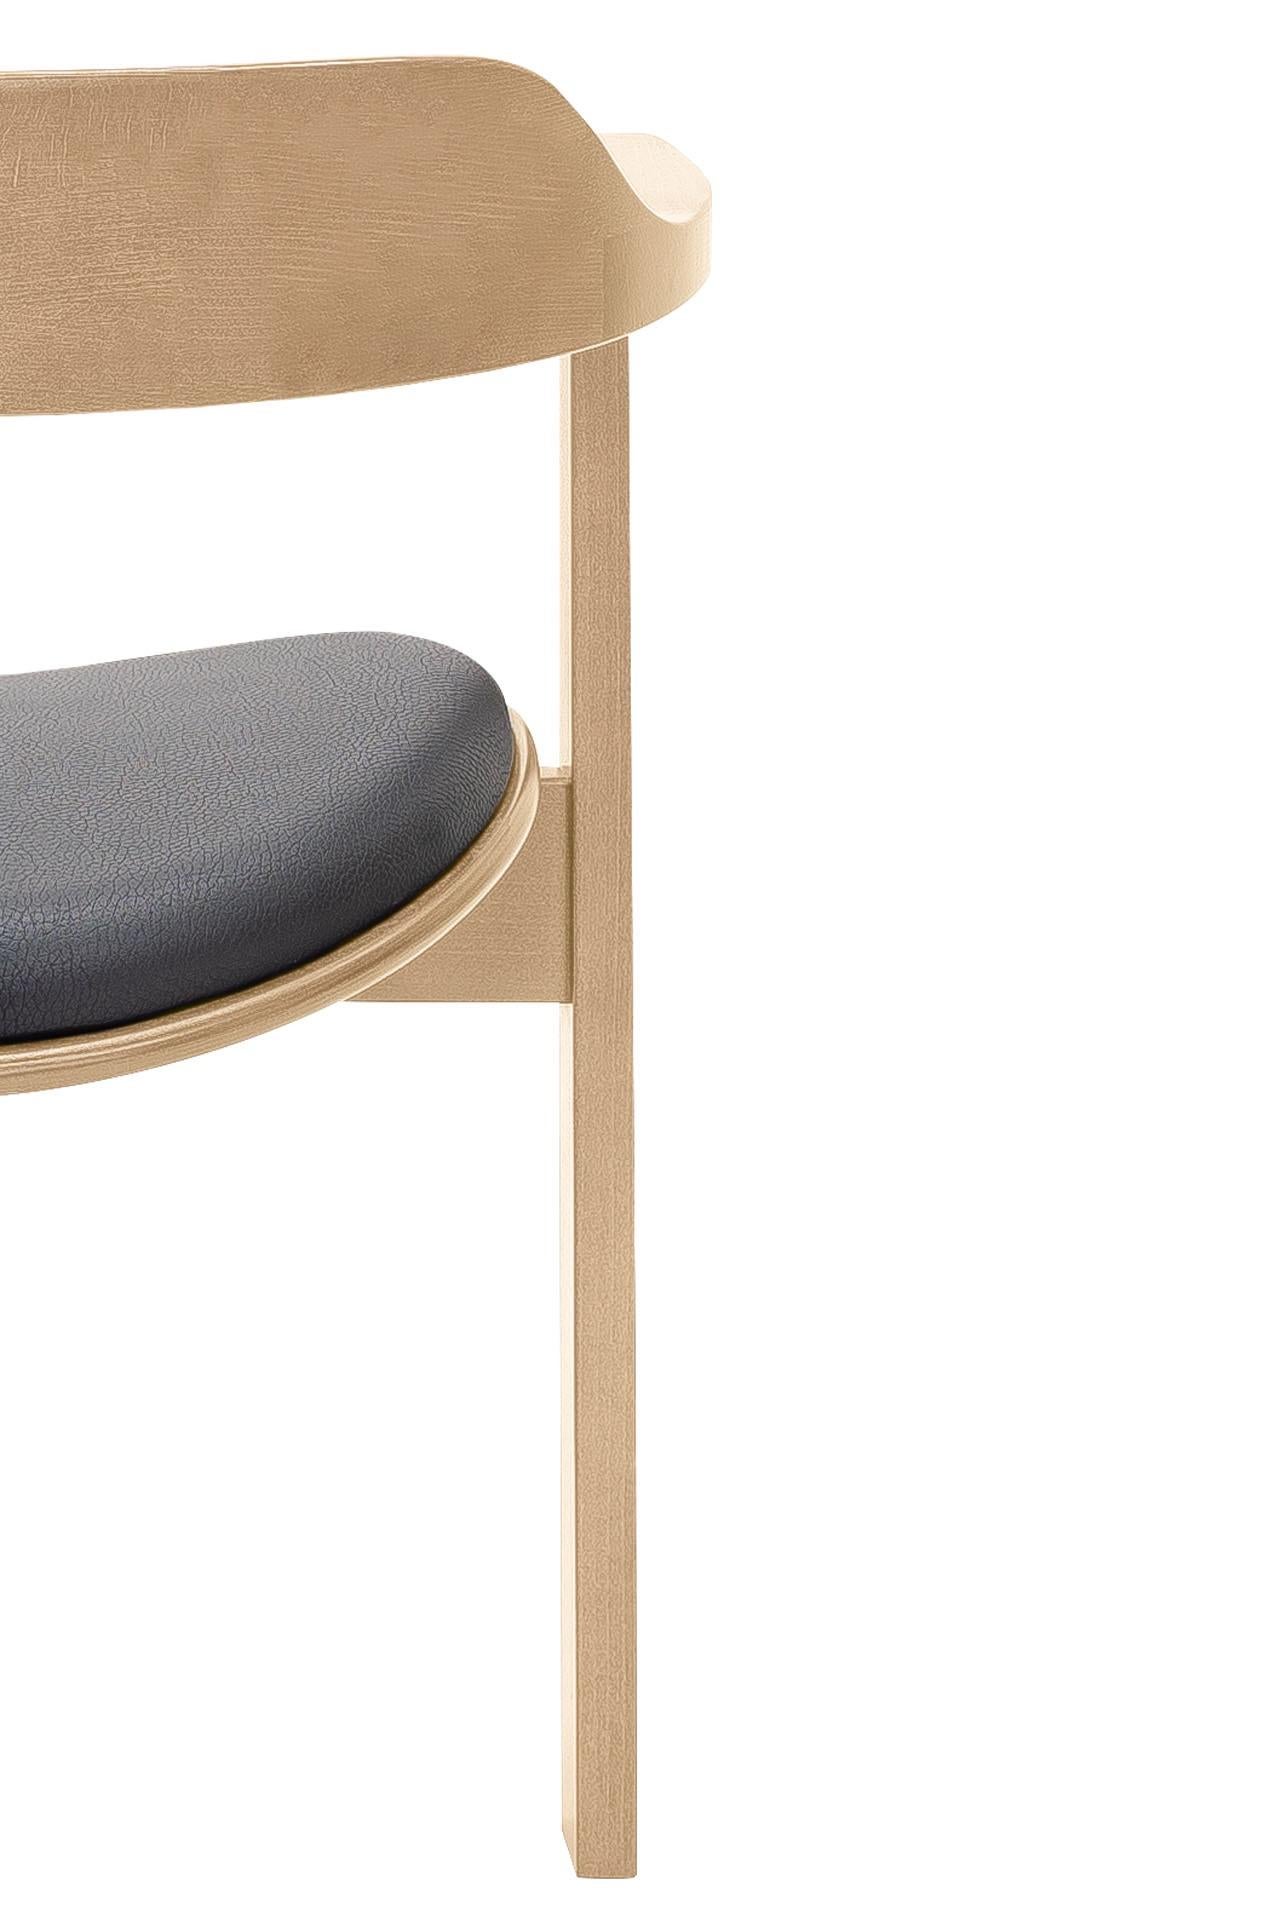 Beech Mid Century Modern 8 Natural Haussmann chair, Robert&Trix Haussmann, Design 1964 For Sale